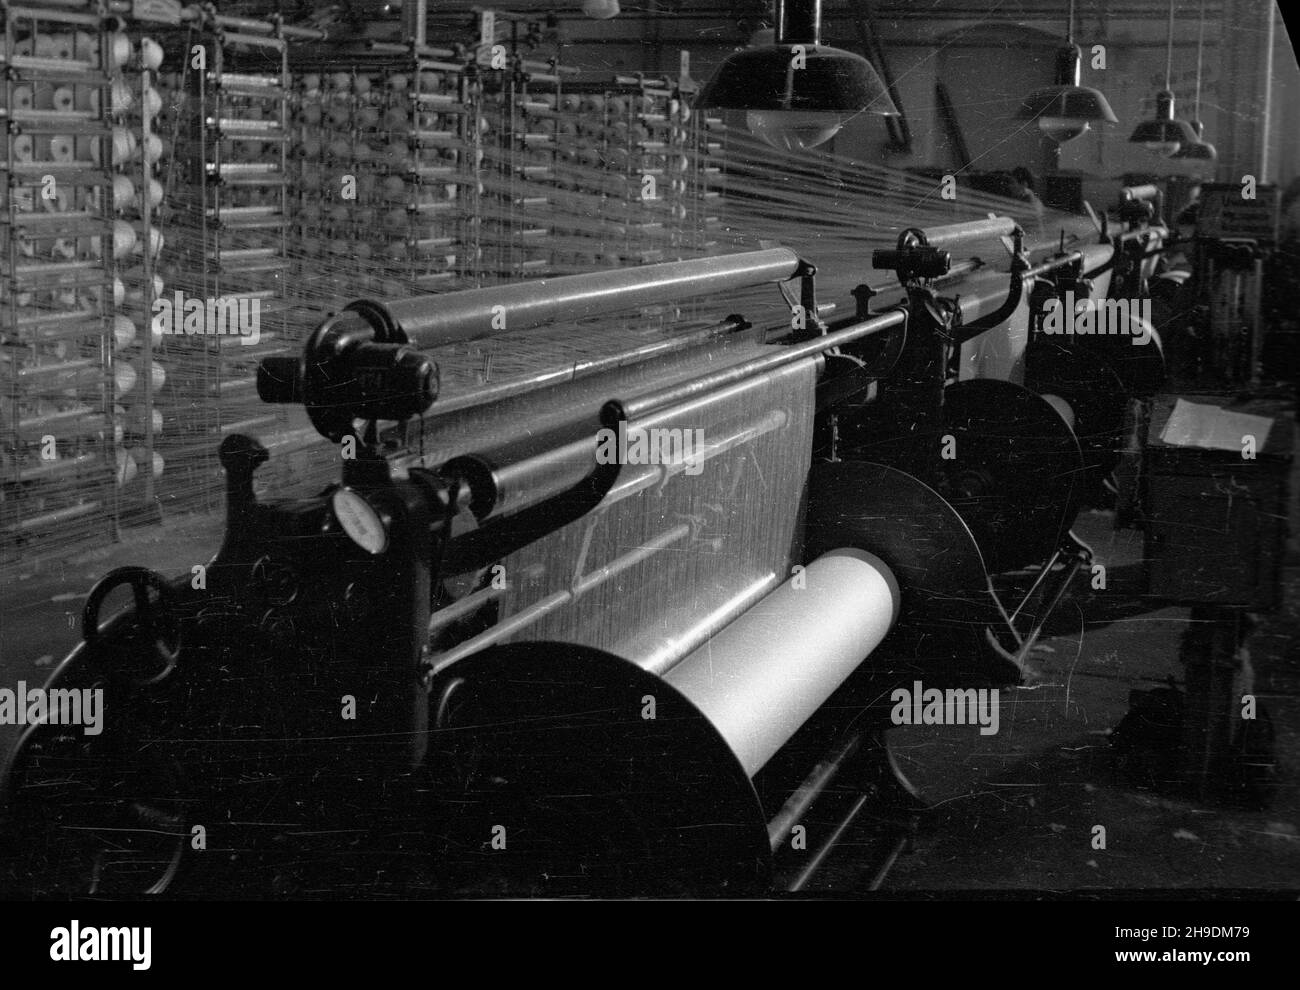 Bielawa, 1947-10. Pañstwowe Zak³ady Przemys³u Bawe³nianego. Nz. maszyny do przêdzenia w hali fabrycznej.  ps/gr  PAP    Dok³adny dzieñ wydarzenia nieustalony.      Bielawa, Oct. 1947. State Cotton Industry Plant. Pictured:  spinning machines.  ps/gr  PAP Stock Photo